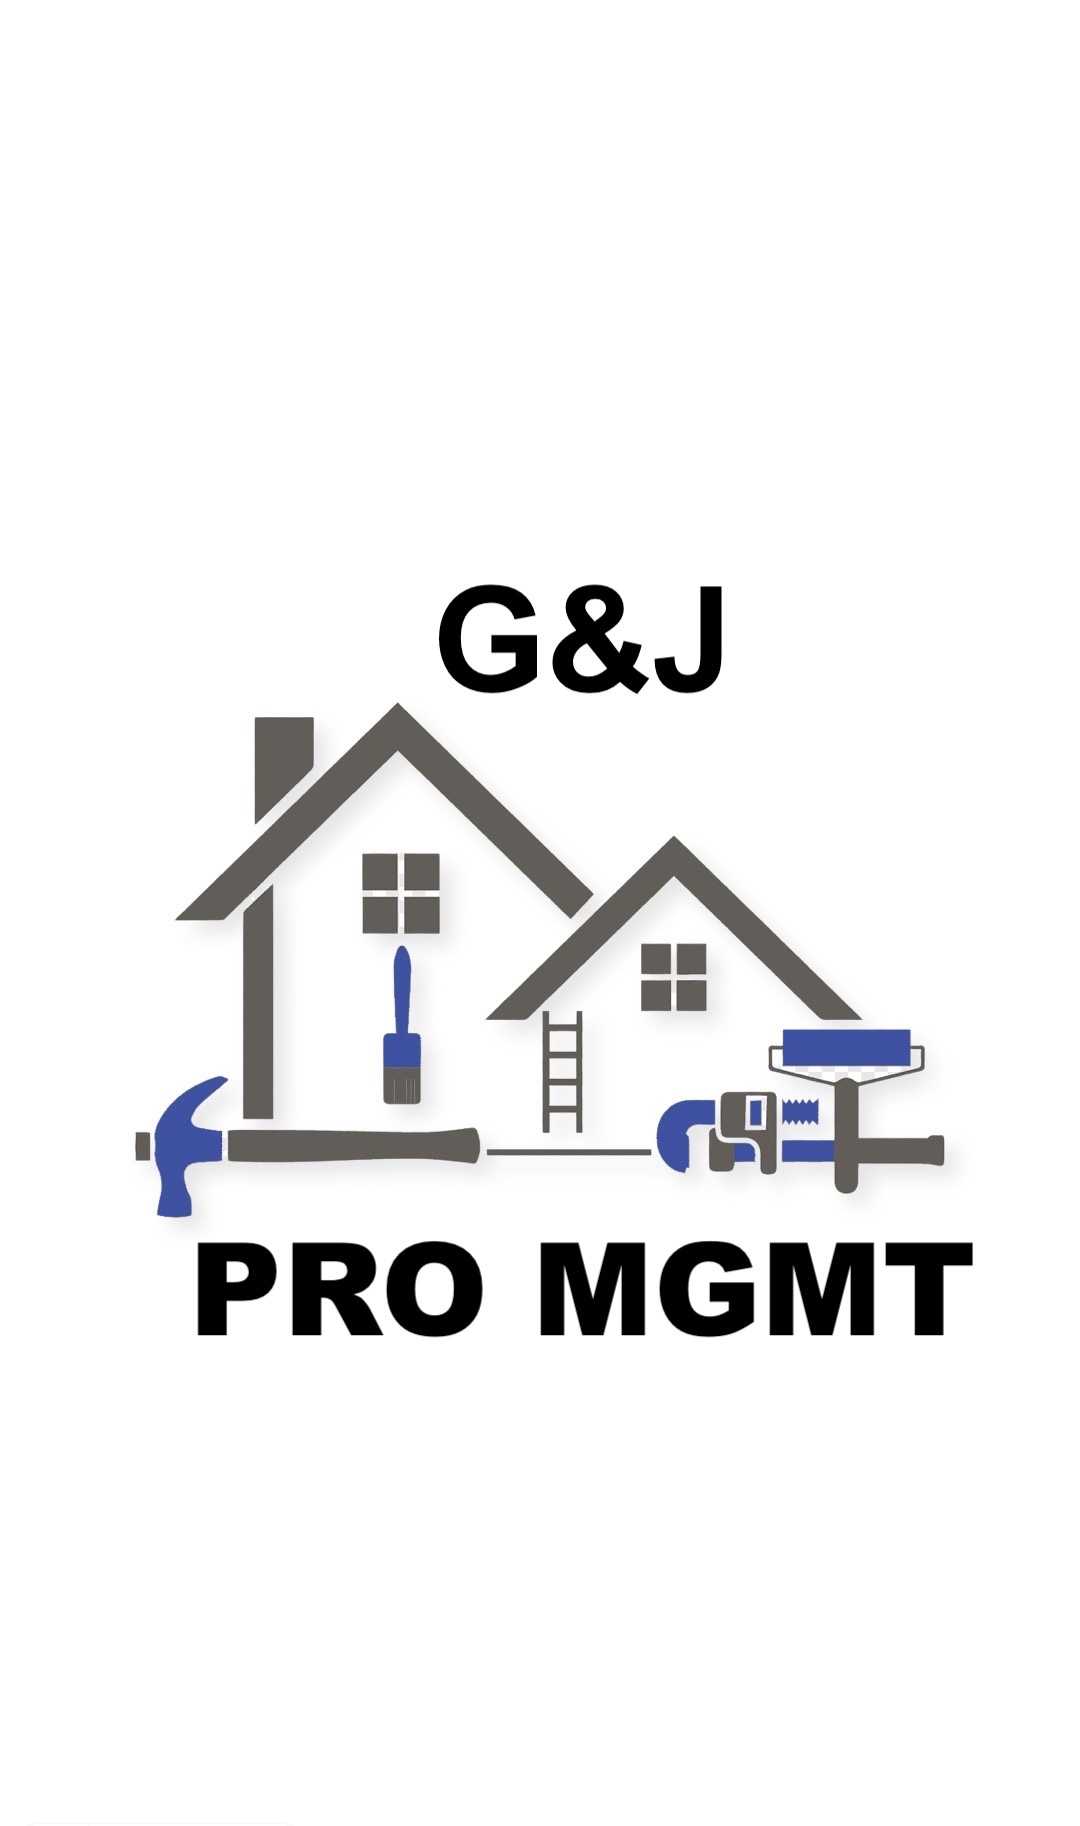 G&J Project Management Logo